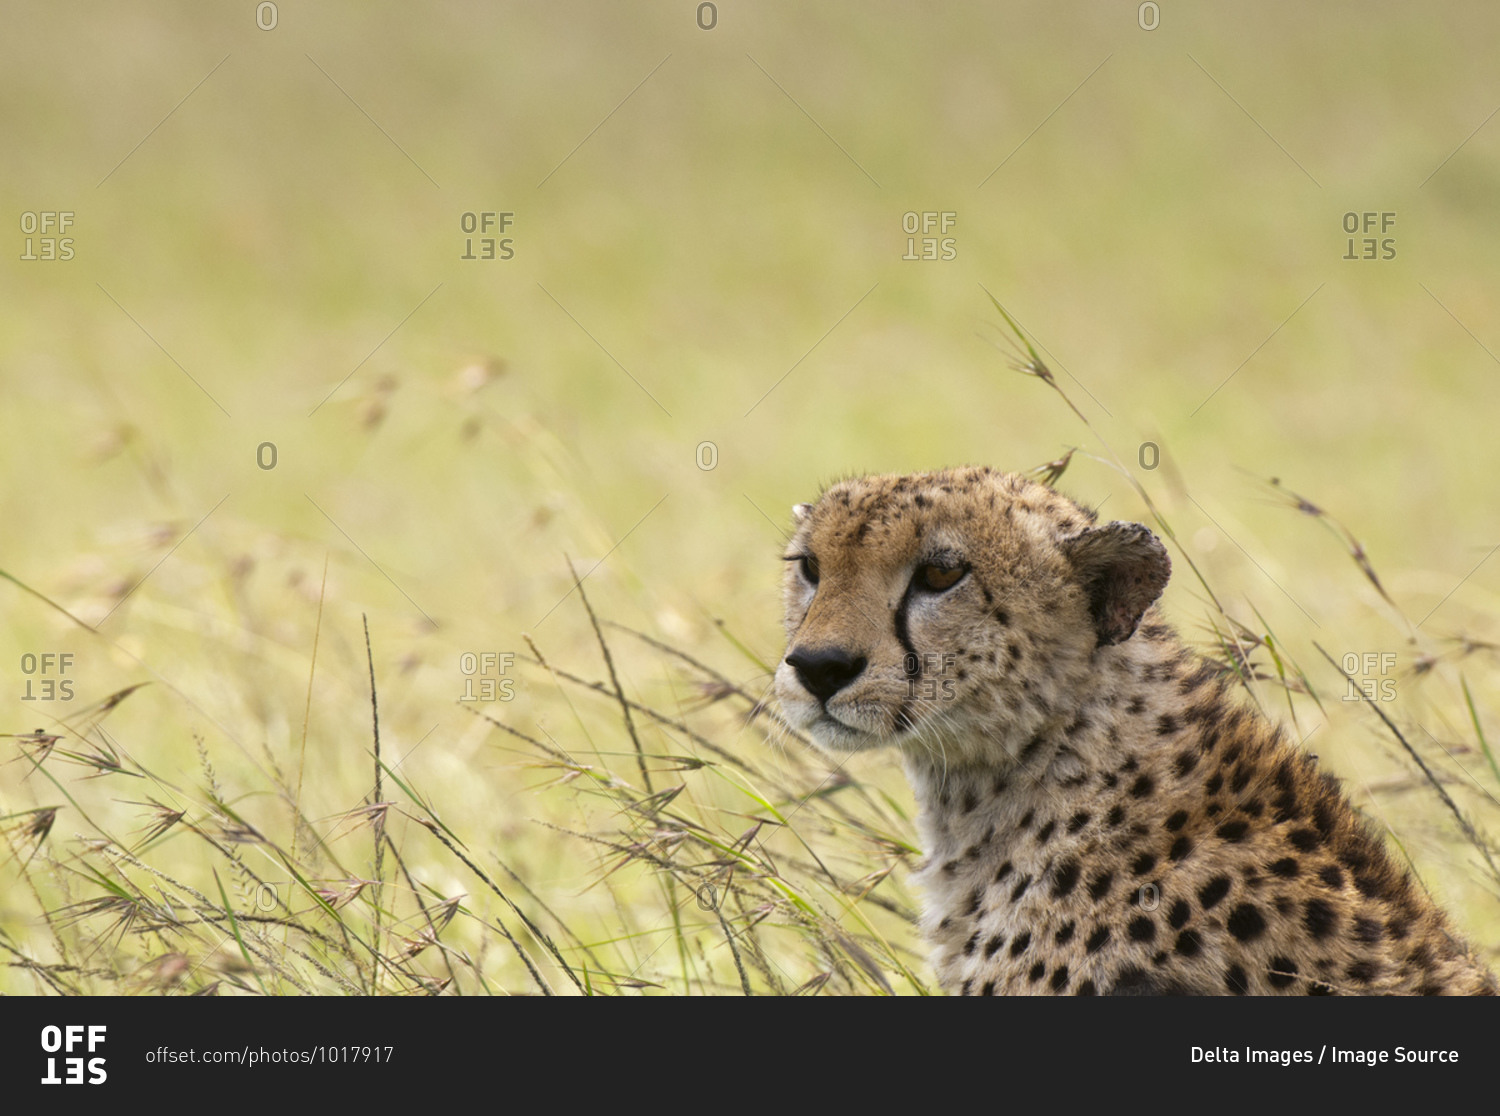 Cheetah (Acynonix jubatus), Masai Mara National Reserve, Kenya